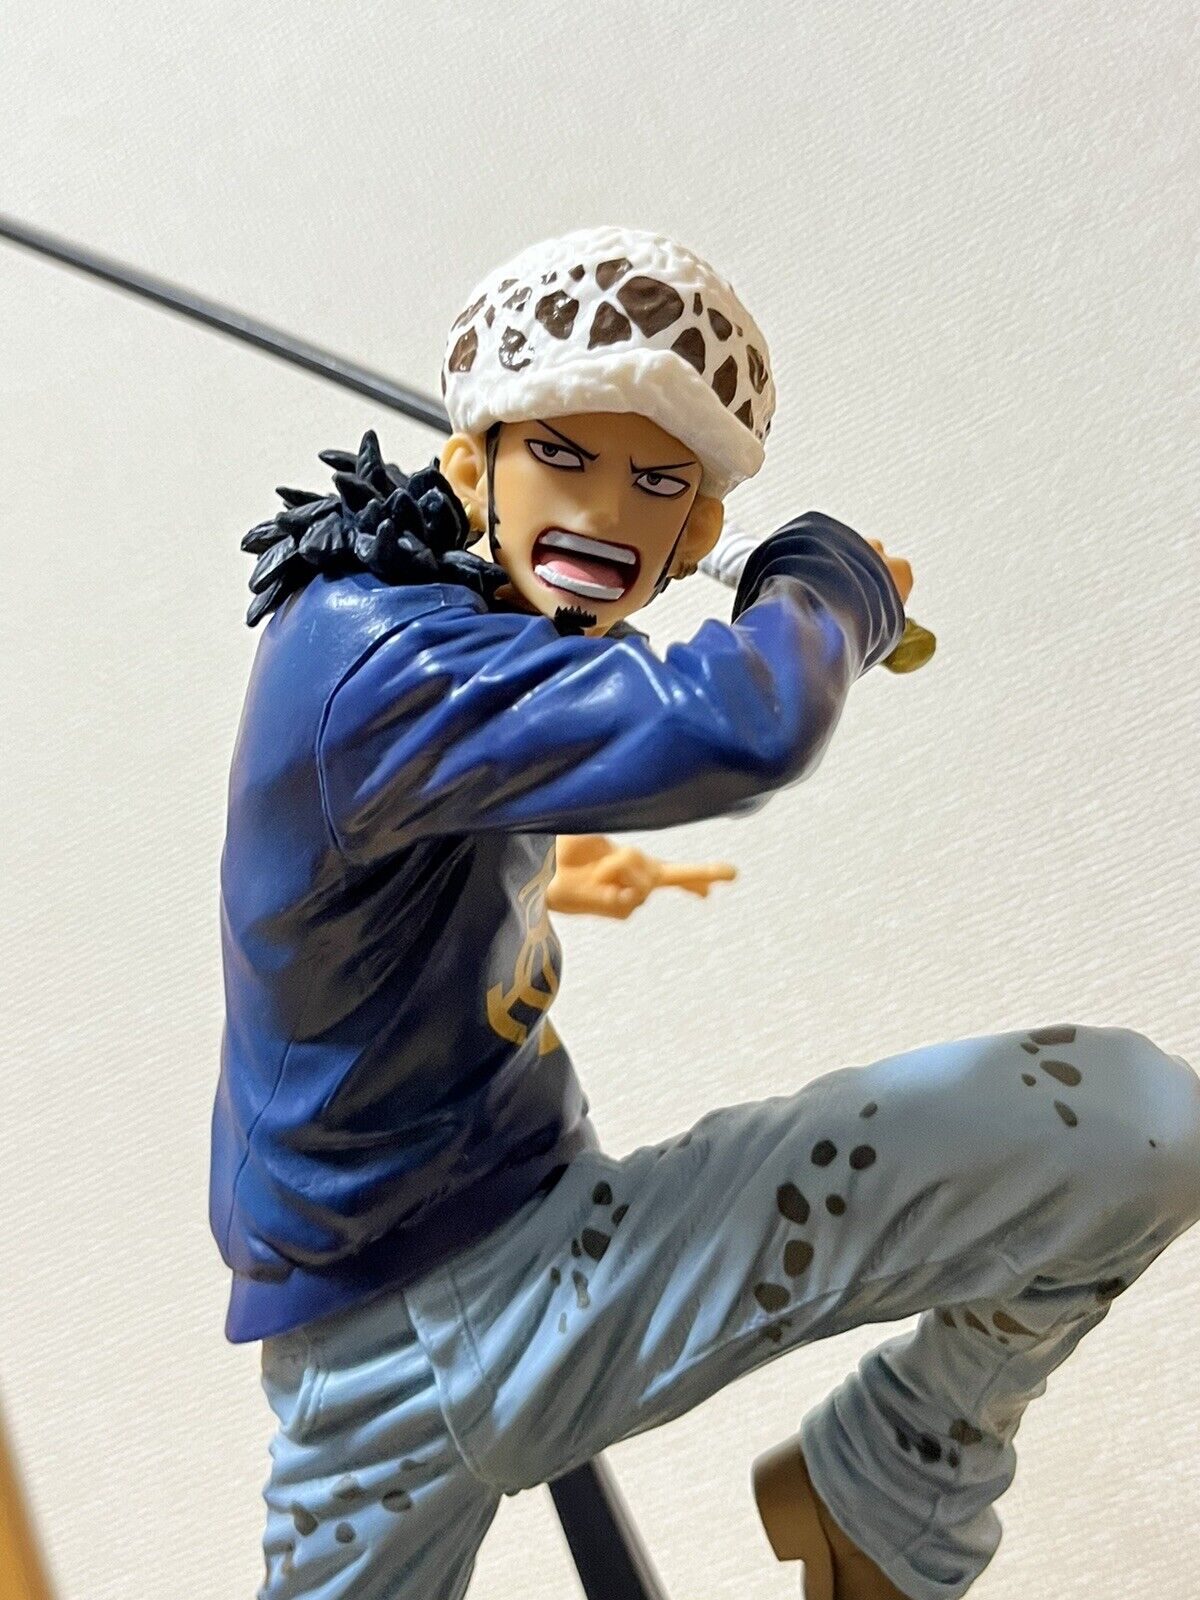 Anime  One Piece Figure Trafalgar Law Maximatic Figure Banprest 19cm/7.8inch